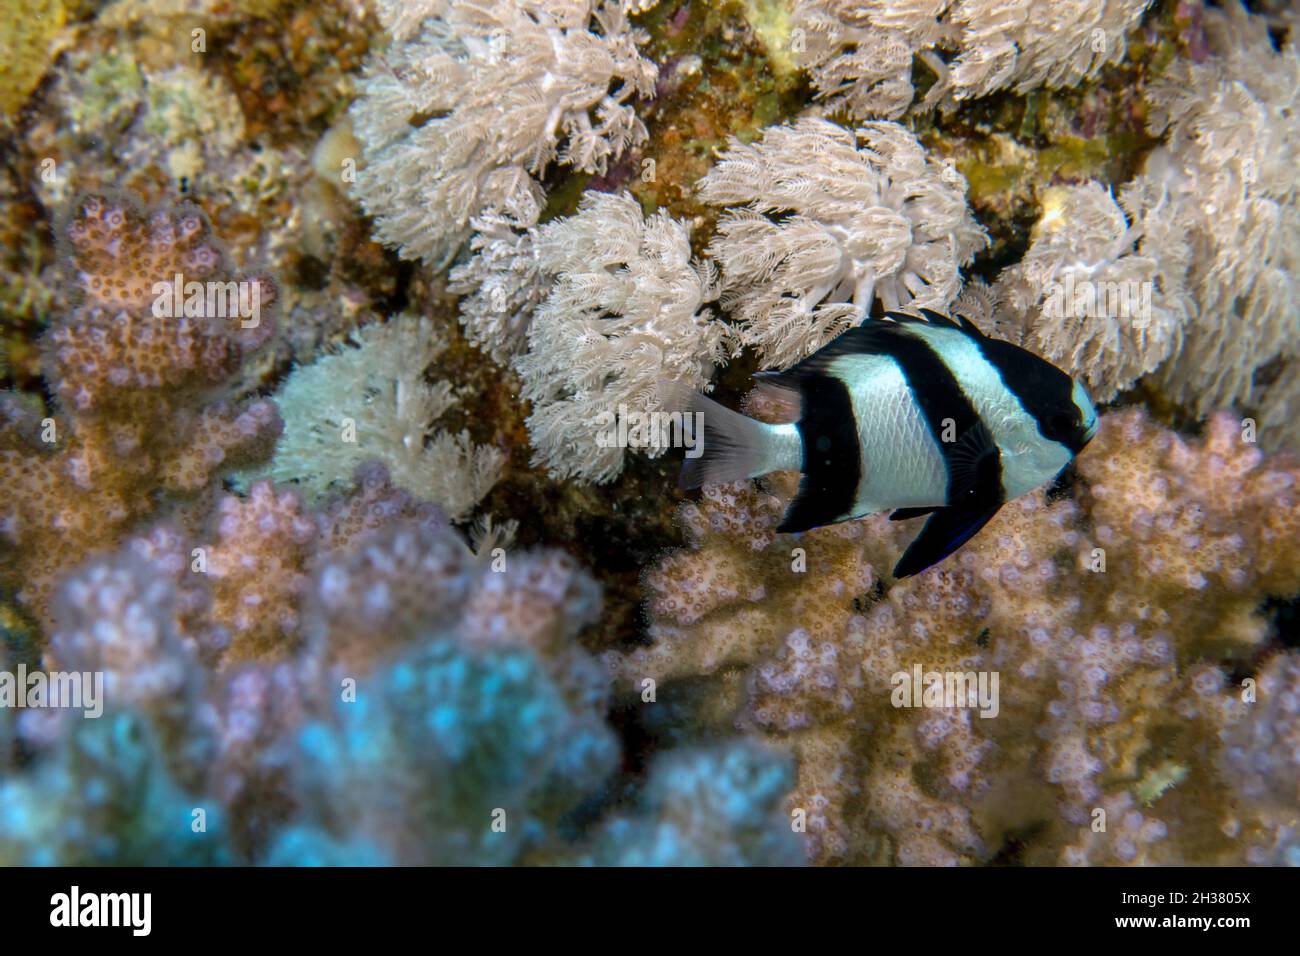 A Humbug Damsel (Dascyllus aruanus) in the Red Sea Stock Photo